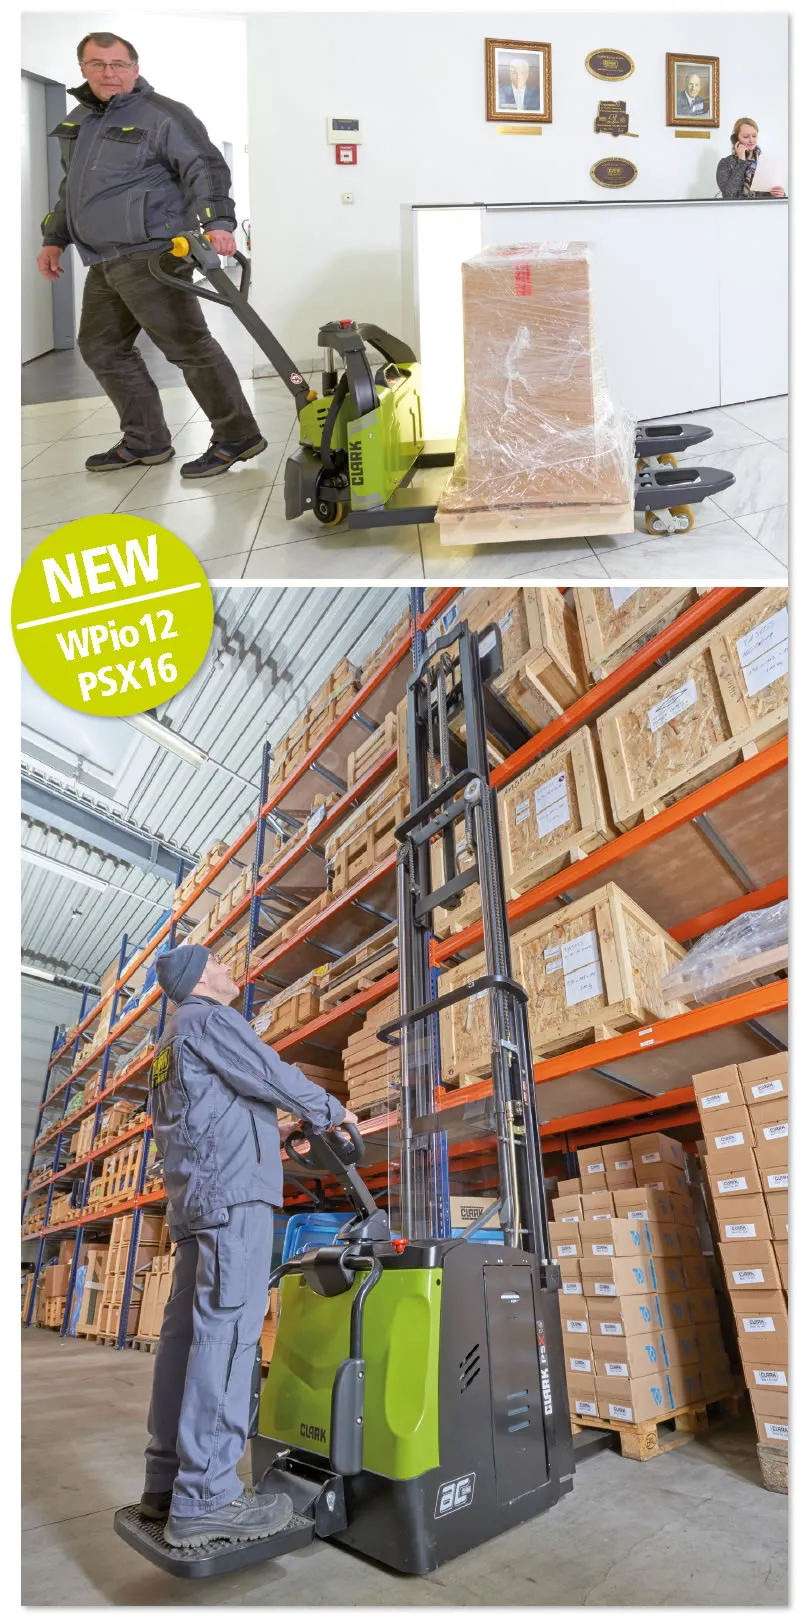 Nouveaux équipements de magasinage : Transpalette électrique WPio12 et gerbeur électrique PSX16